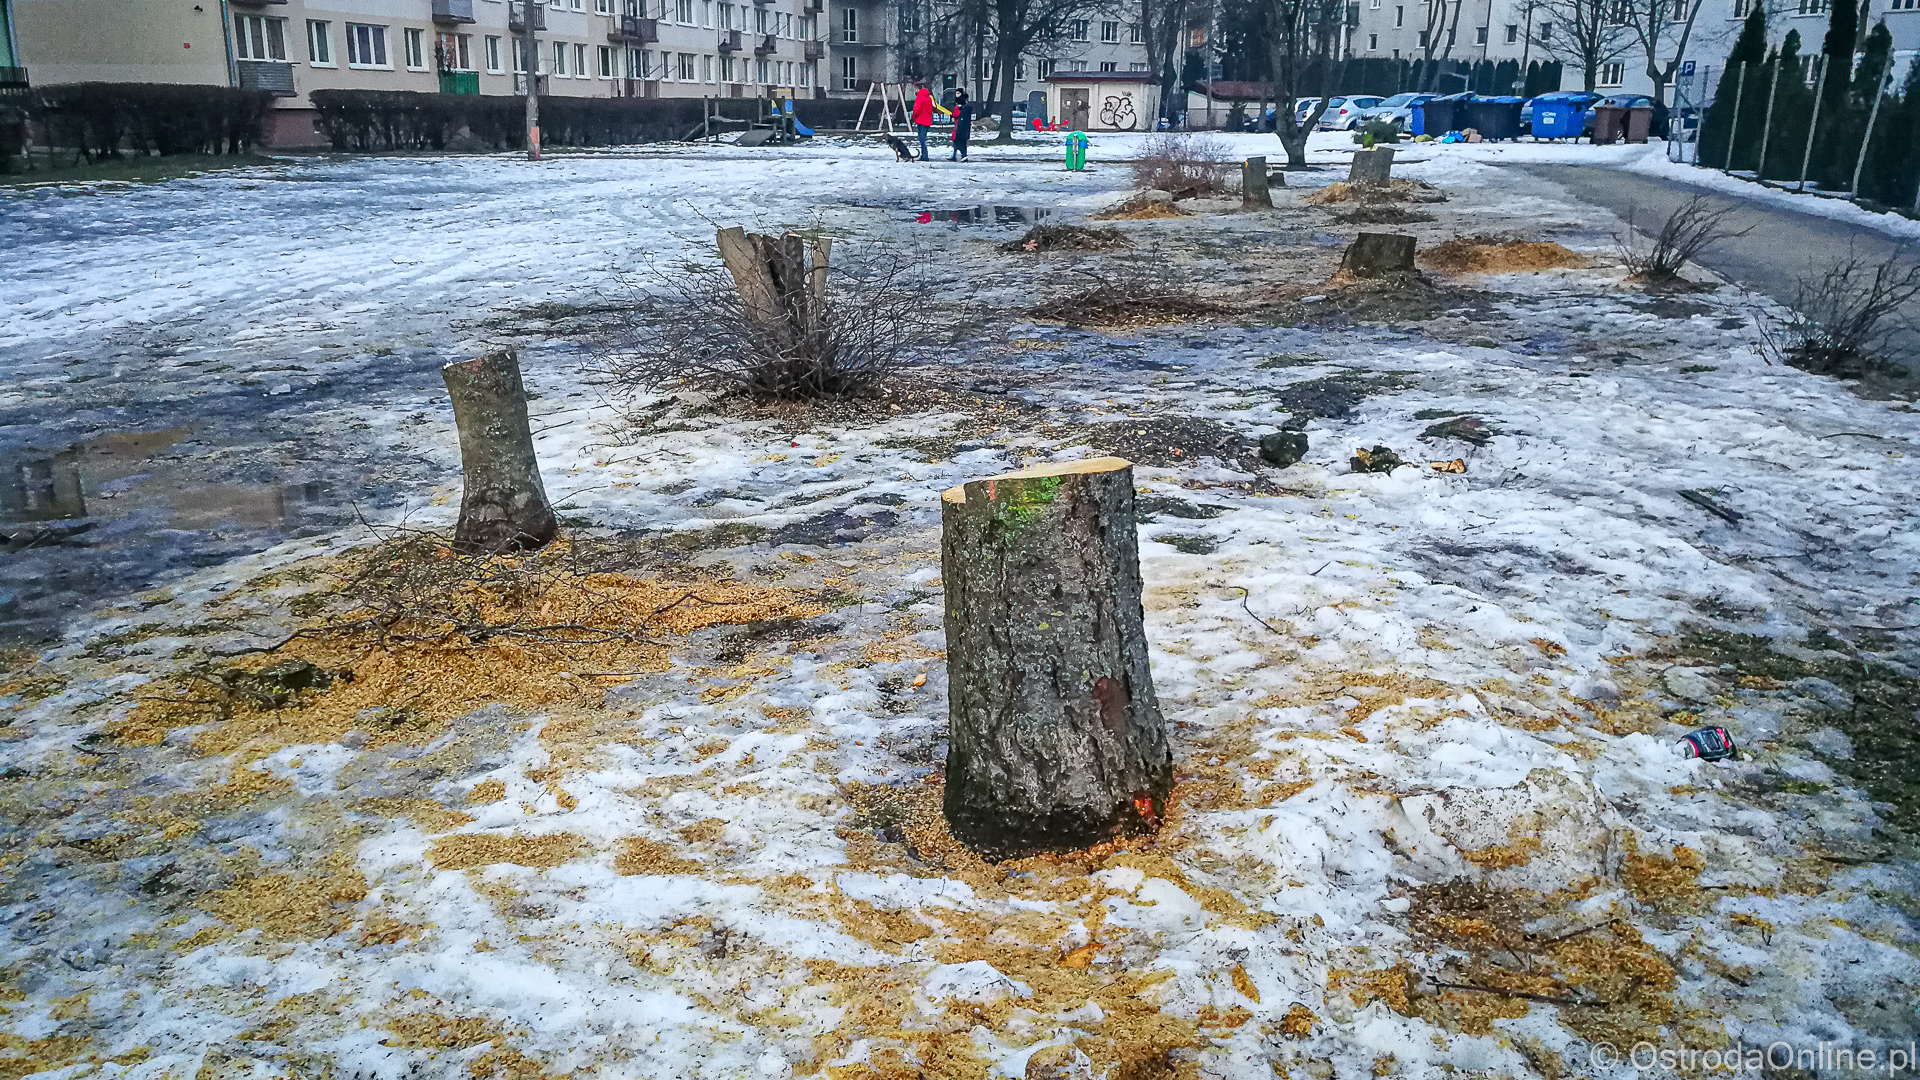 Wycinka drzew w miejscu nowego żłobka, foto: ostrodaonline.pl